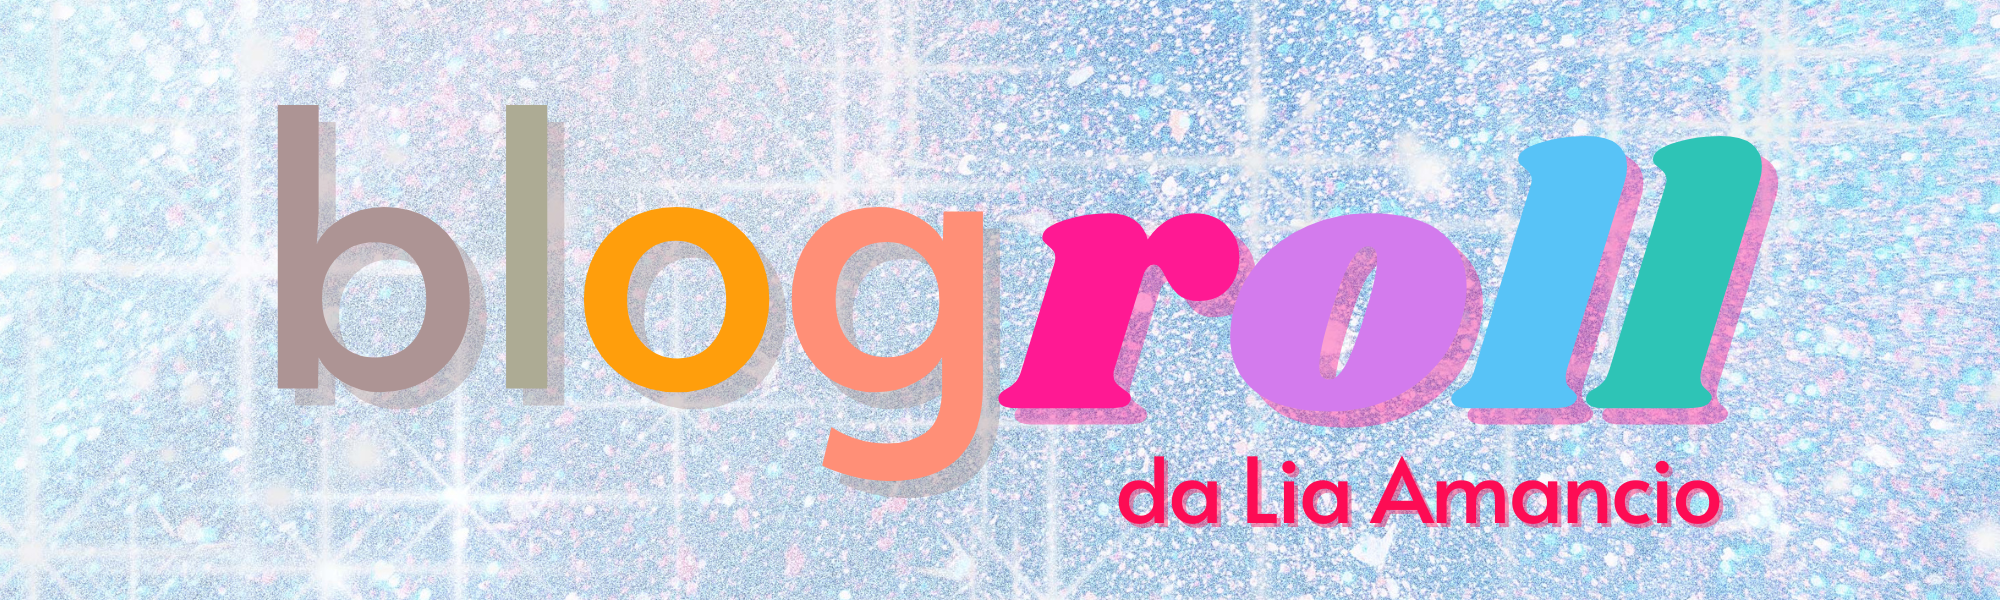 Banner - Blogroll (fundo de glitter e texto "blogroll da Lia Amancio" em letras coloridas)